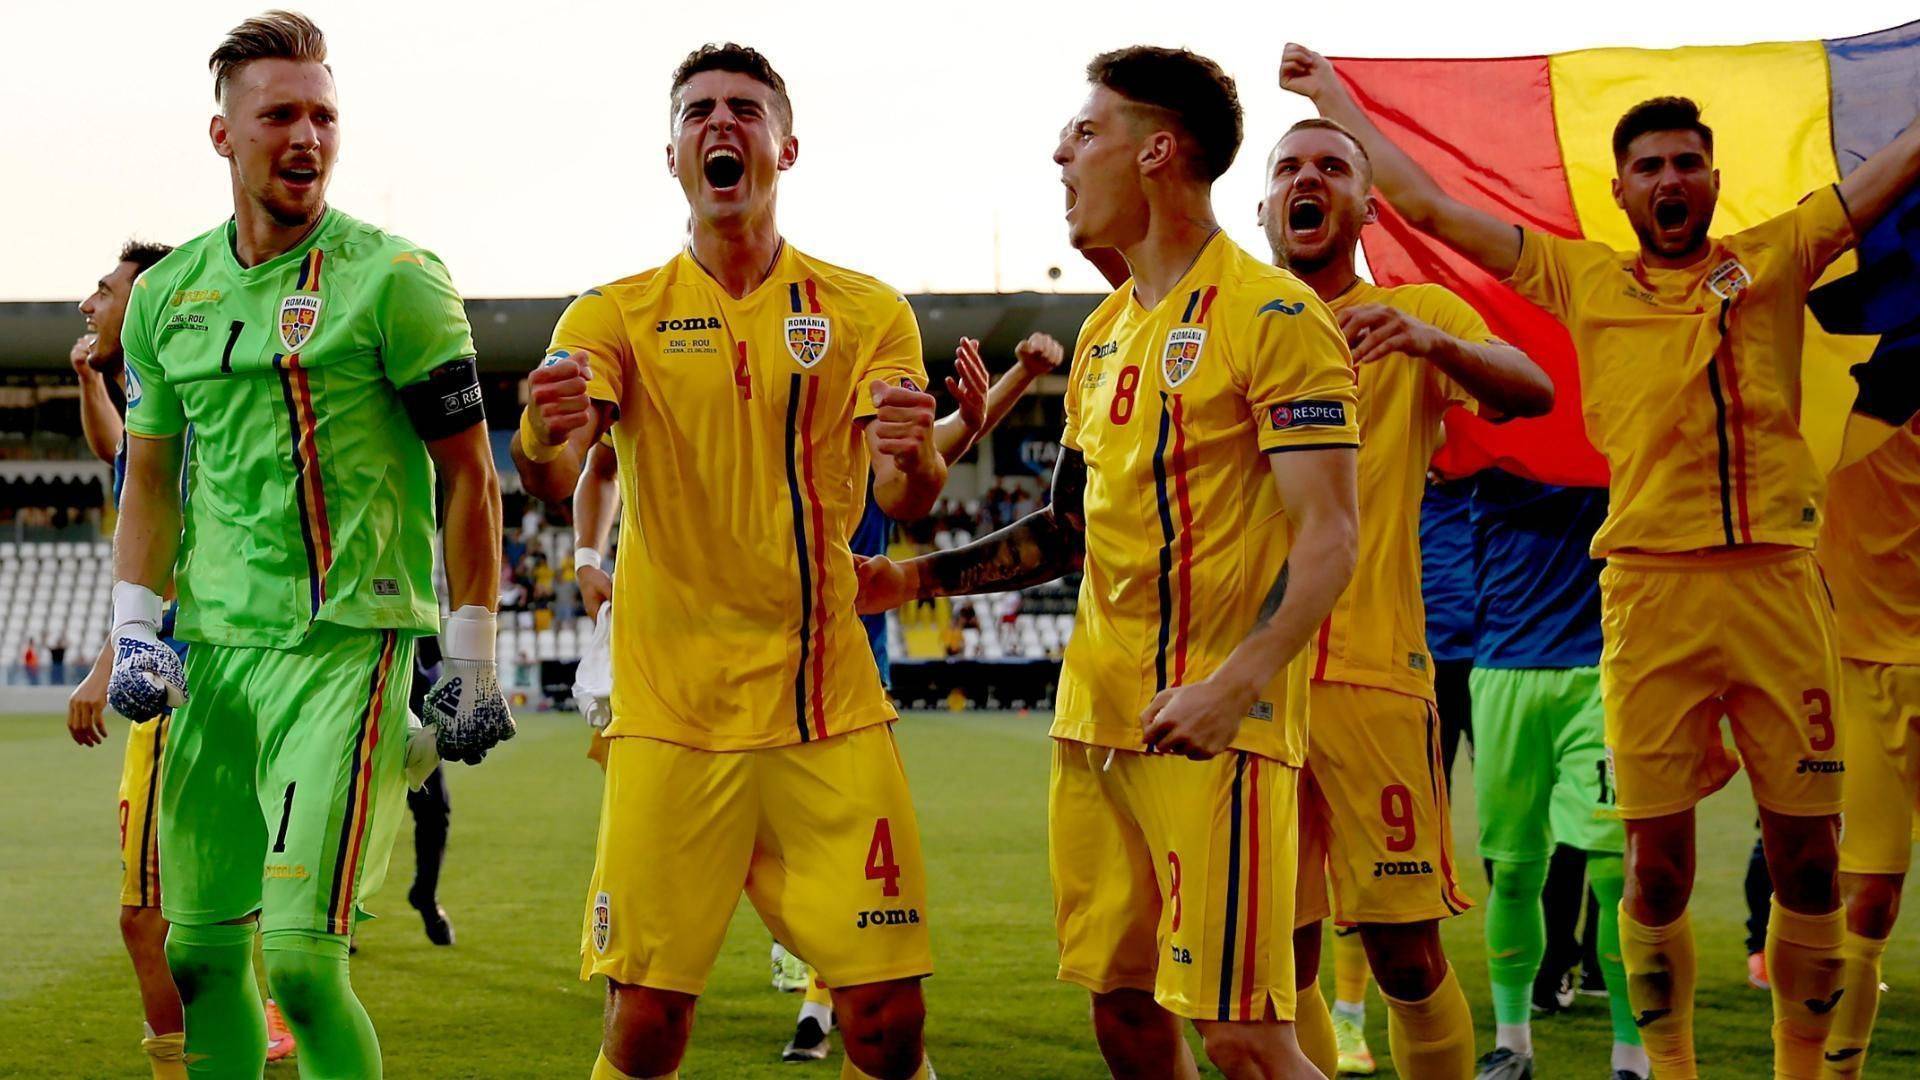 奈美聊u21欧洲杯:罗马尼亚 vs 克罗地亚,西班牙 vs 乌克兰